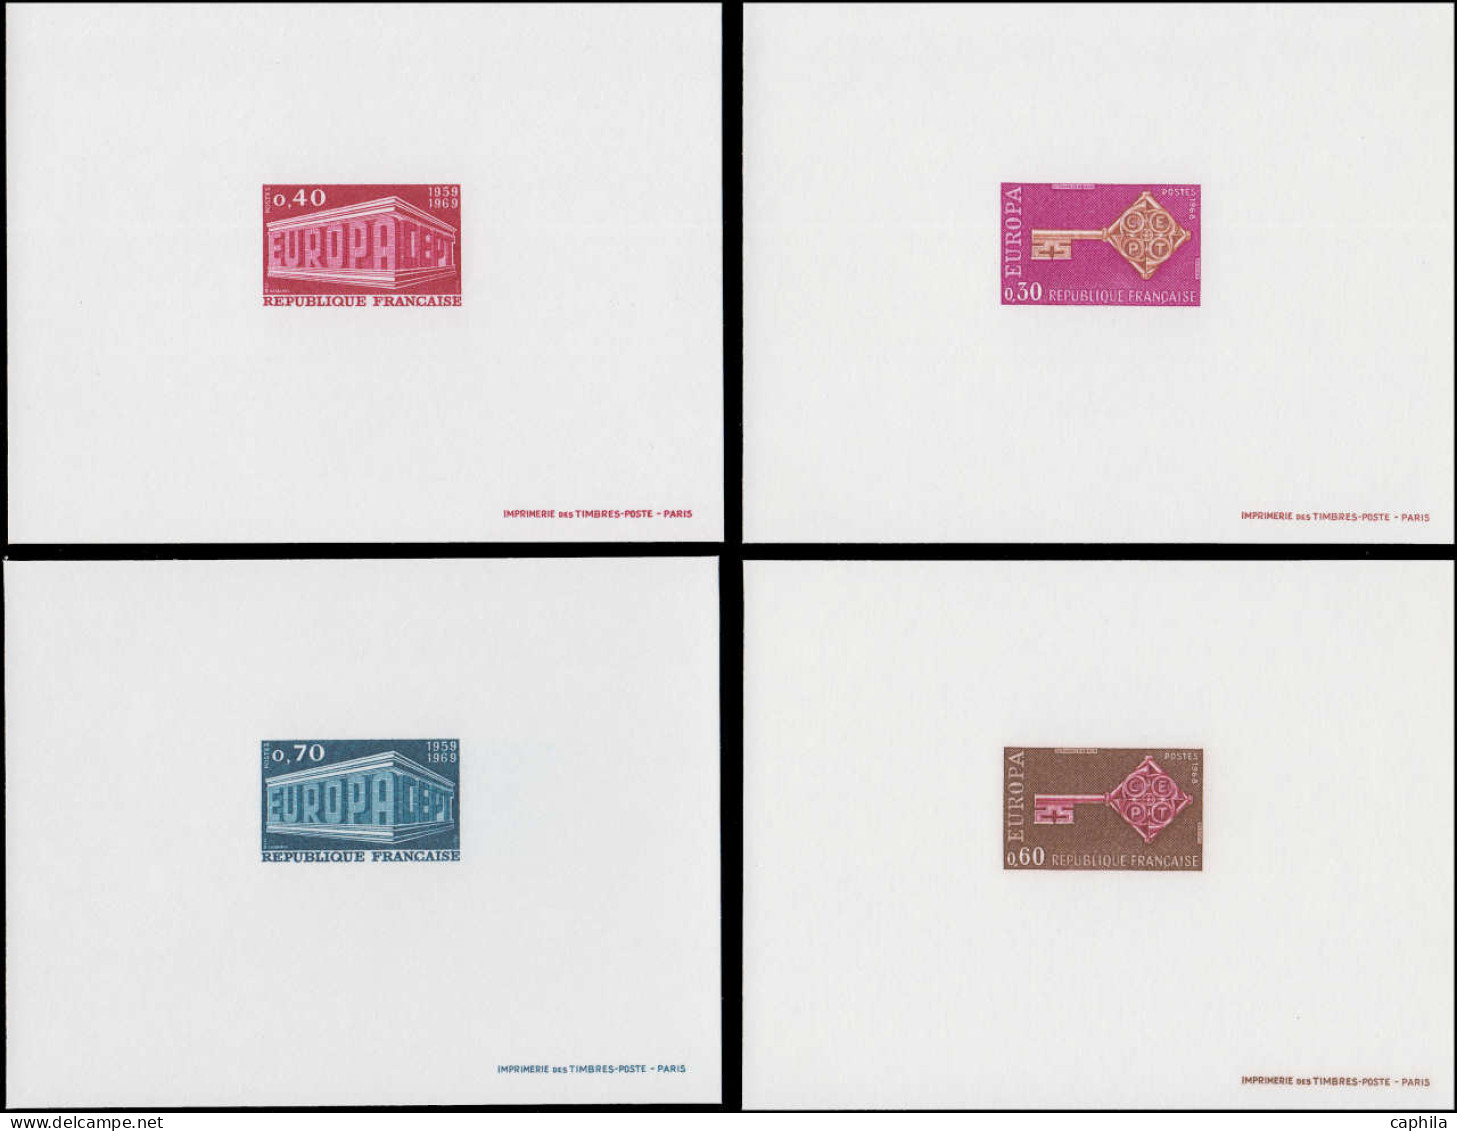 EPL FRANCE - Lots & Collections - 1956, Collection complète Europa France 1956/1996 en épreuves de luxe et blocs gommés